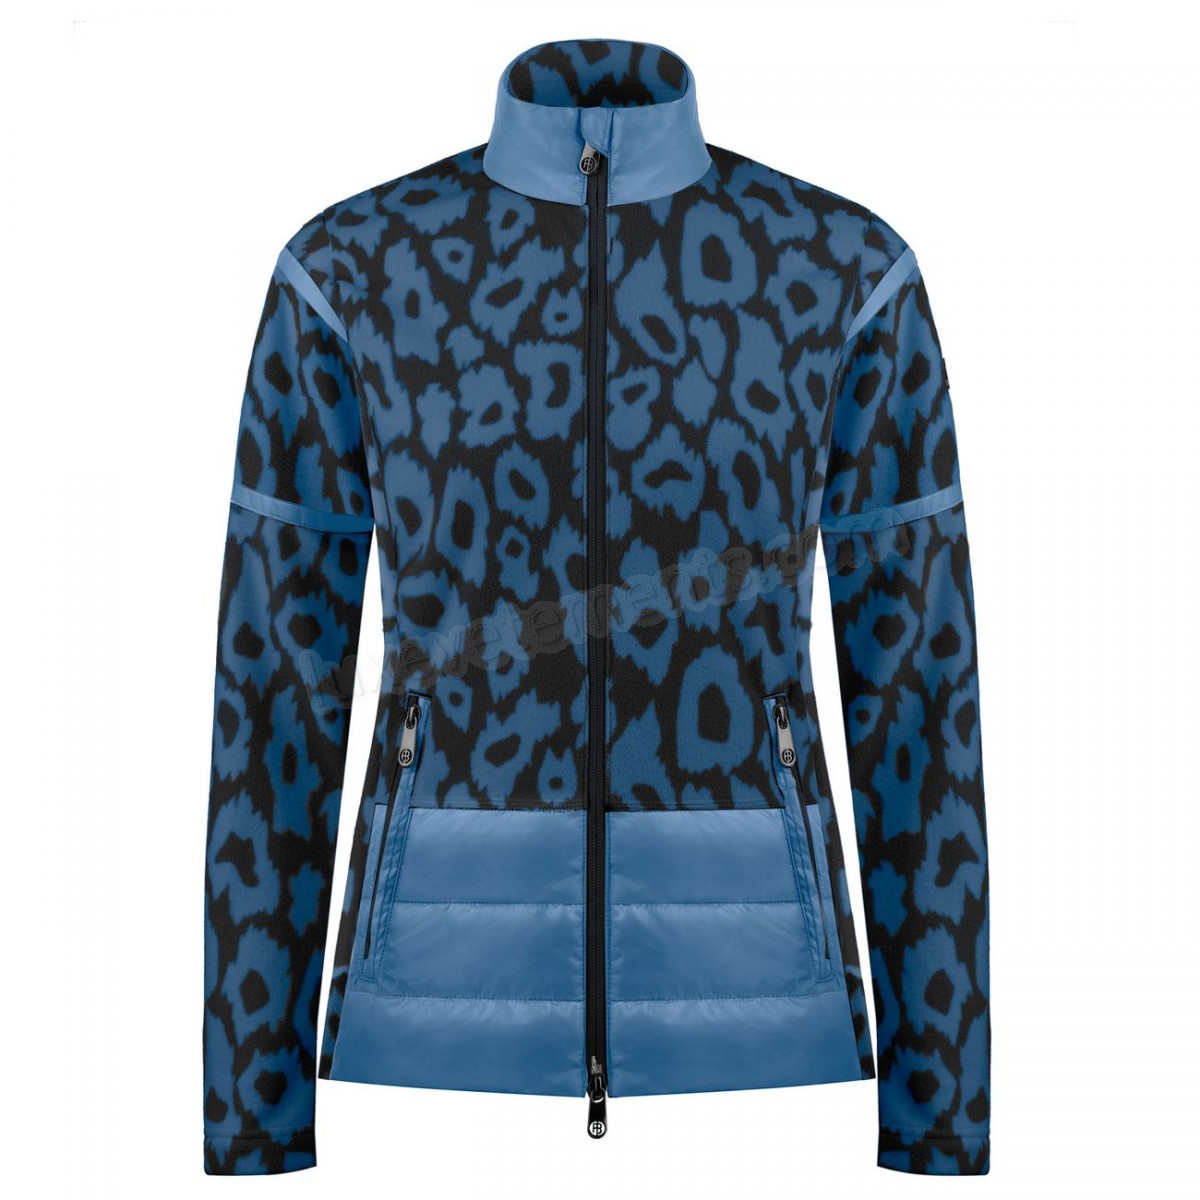 Poivre Blanc-Sports d'hiver femme POIVRE BLANC Veste Polaire Poivre Blanc Hybrid Fleece Jacket 1601 Panther Blue Femme Vente en ligne - -4